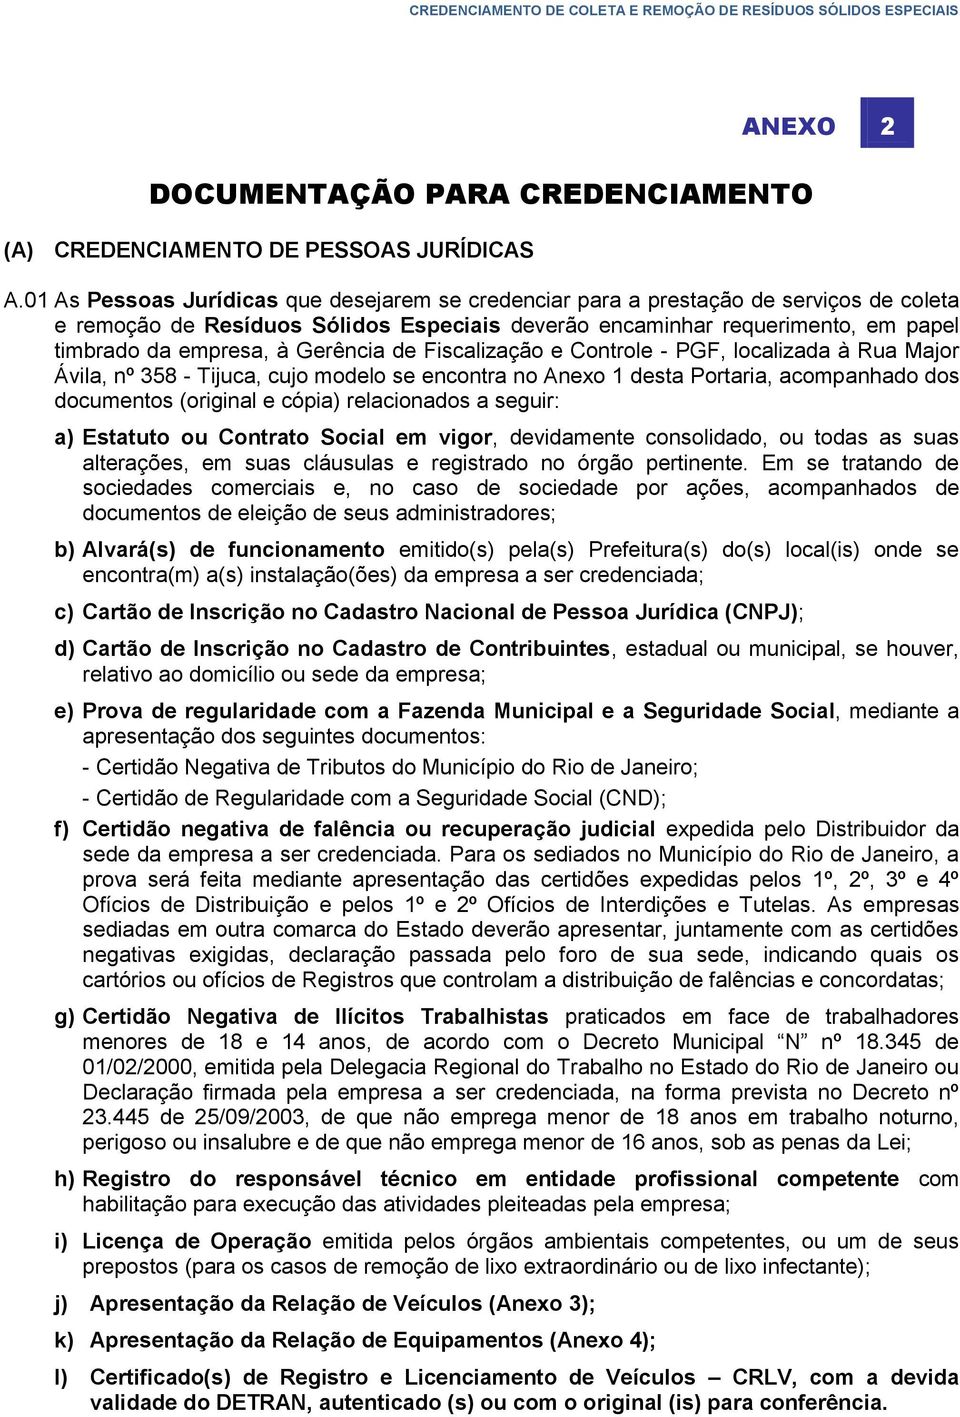 Gerência de Fiscalização e Controle - PGF, localizada à Rua Major Ávila, nº 358 - Tijuca, cujo modelo se encontra no Anexo 1 desta Portaria, acompanhado dos documentos (original e cópia) relacionados